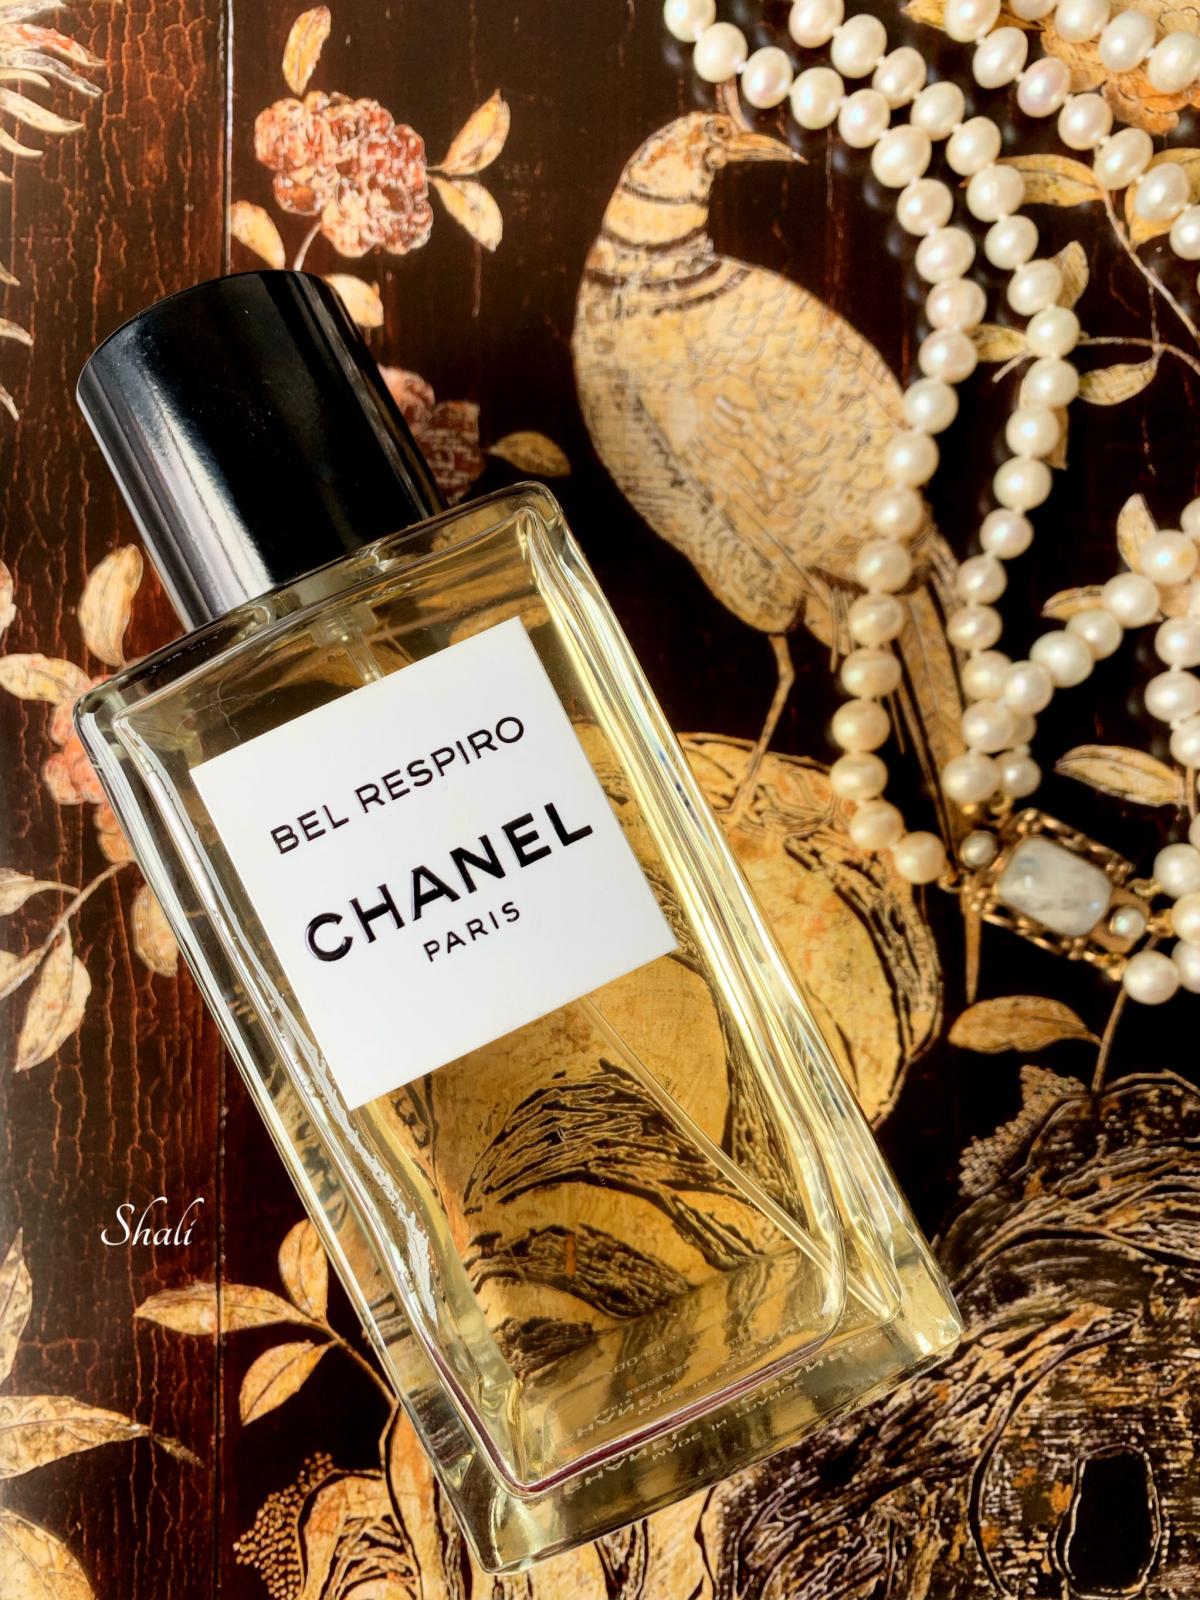 Les Exclusifs de Chanel Bel Respiro Chanel perfume - a fragrância